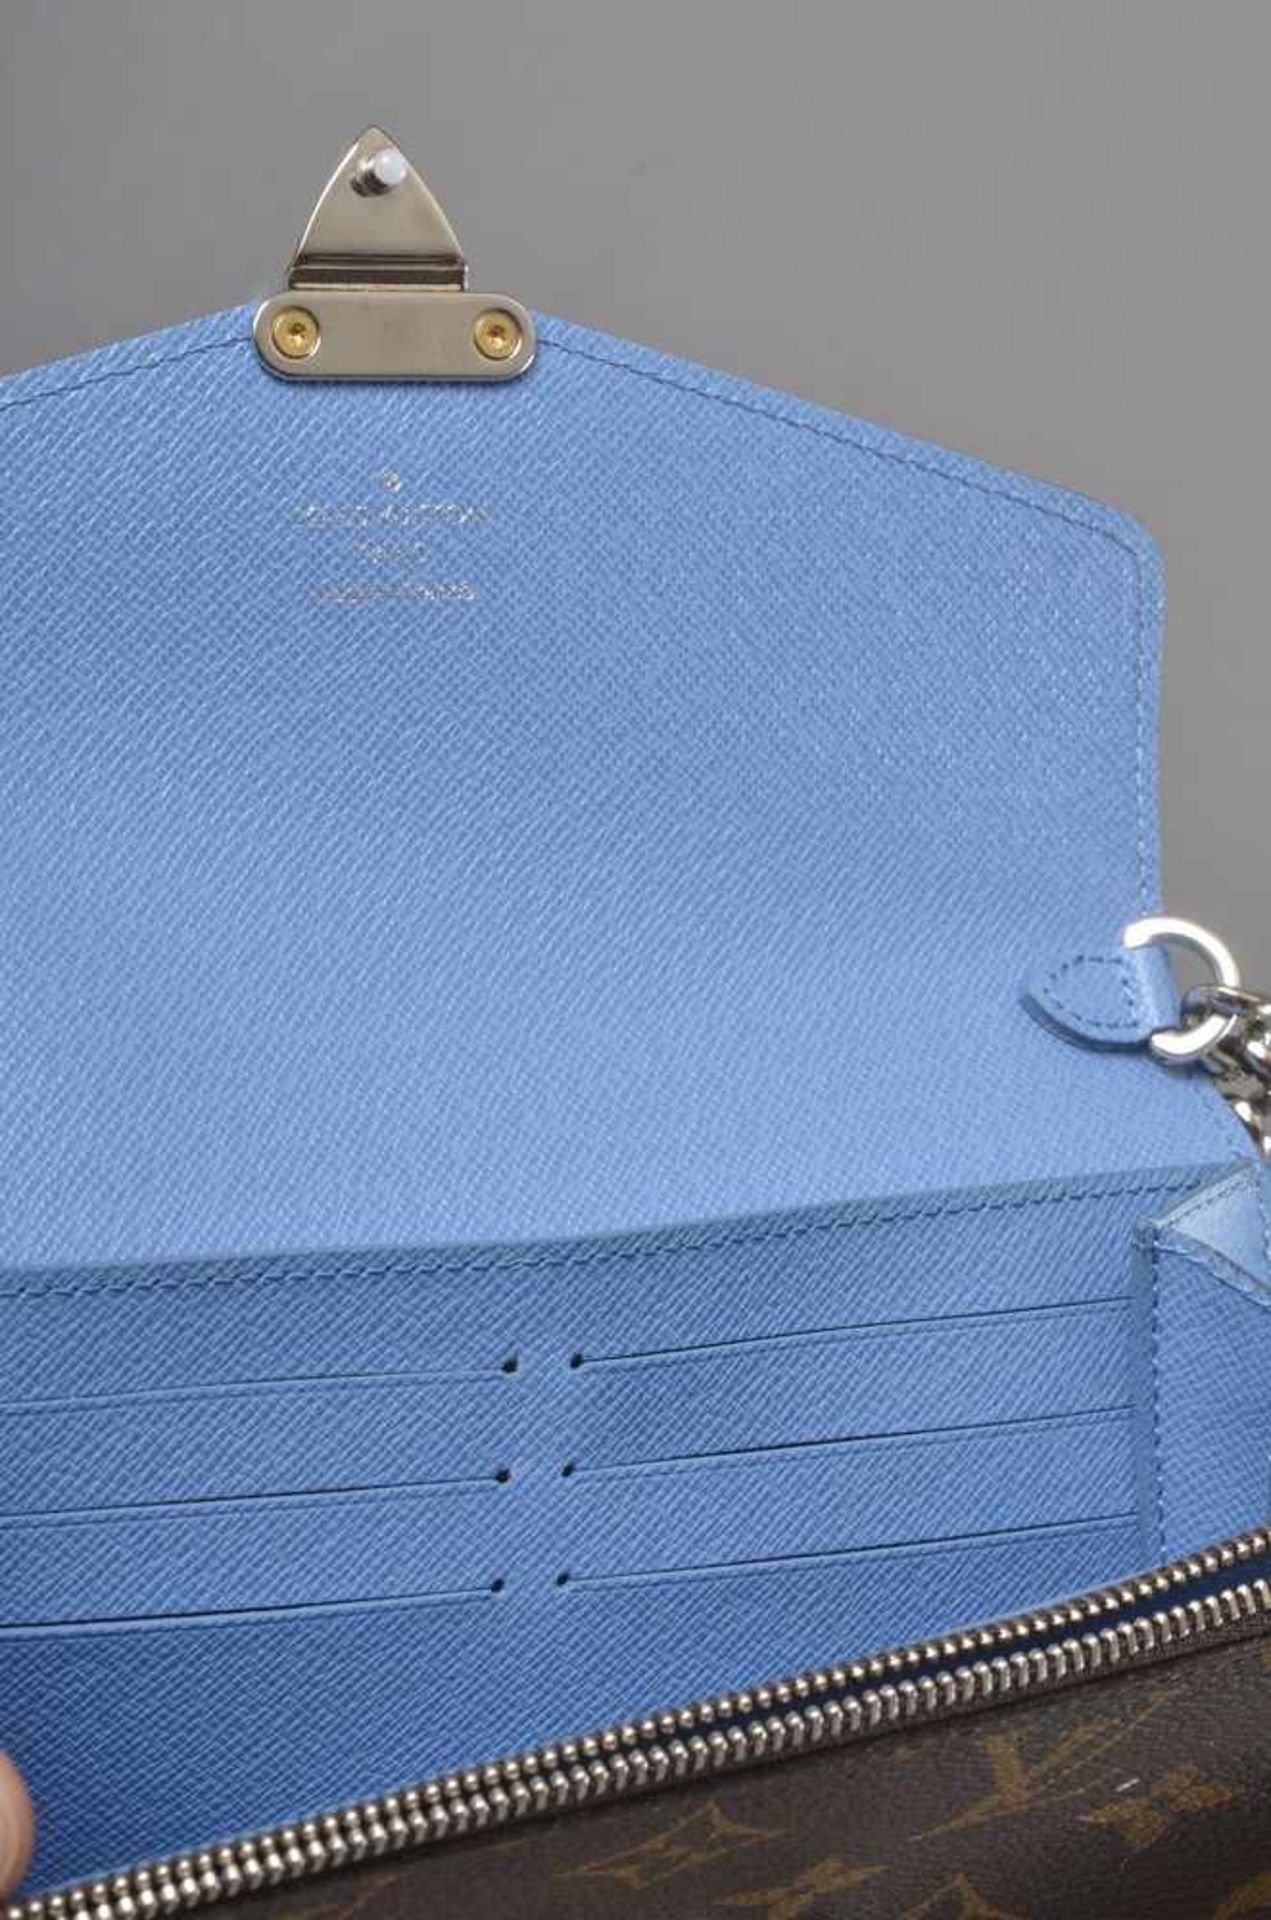 Louis Vuitton "Chain Wallet" aus der "Tribal Masc Collection", blau, Nr. SP 4114, 12x19x3cm - Image 2 of 2